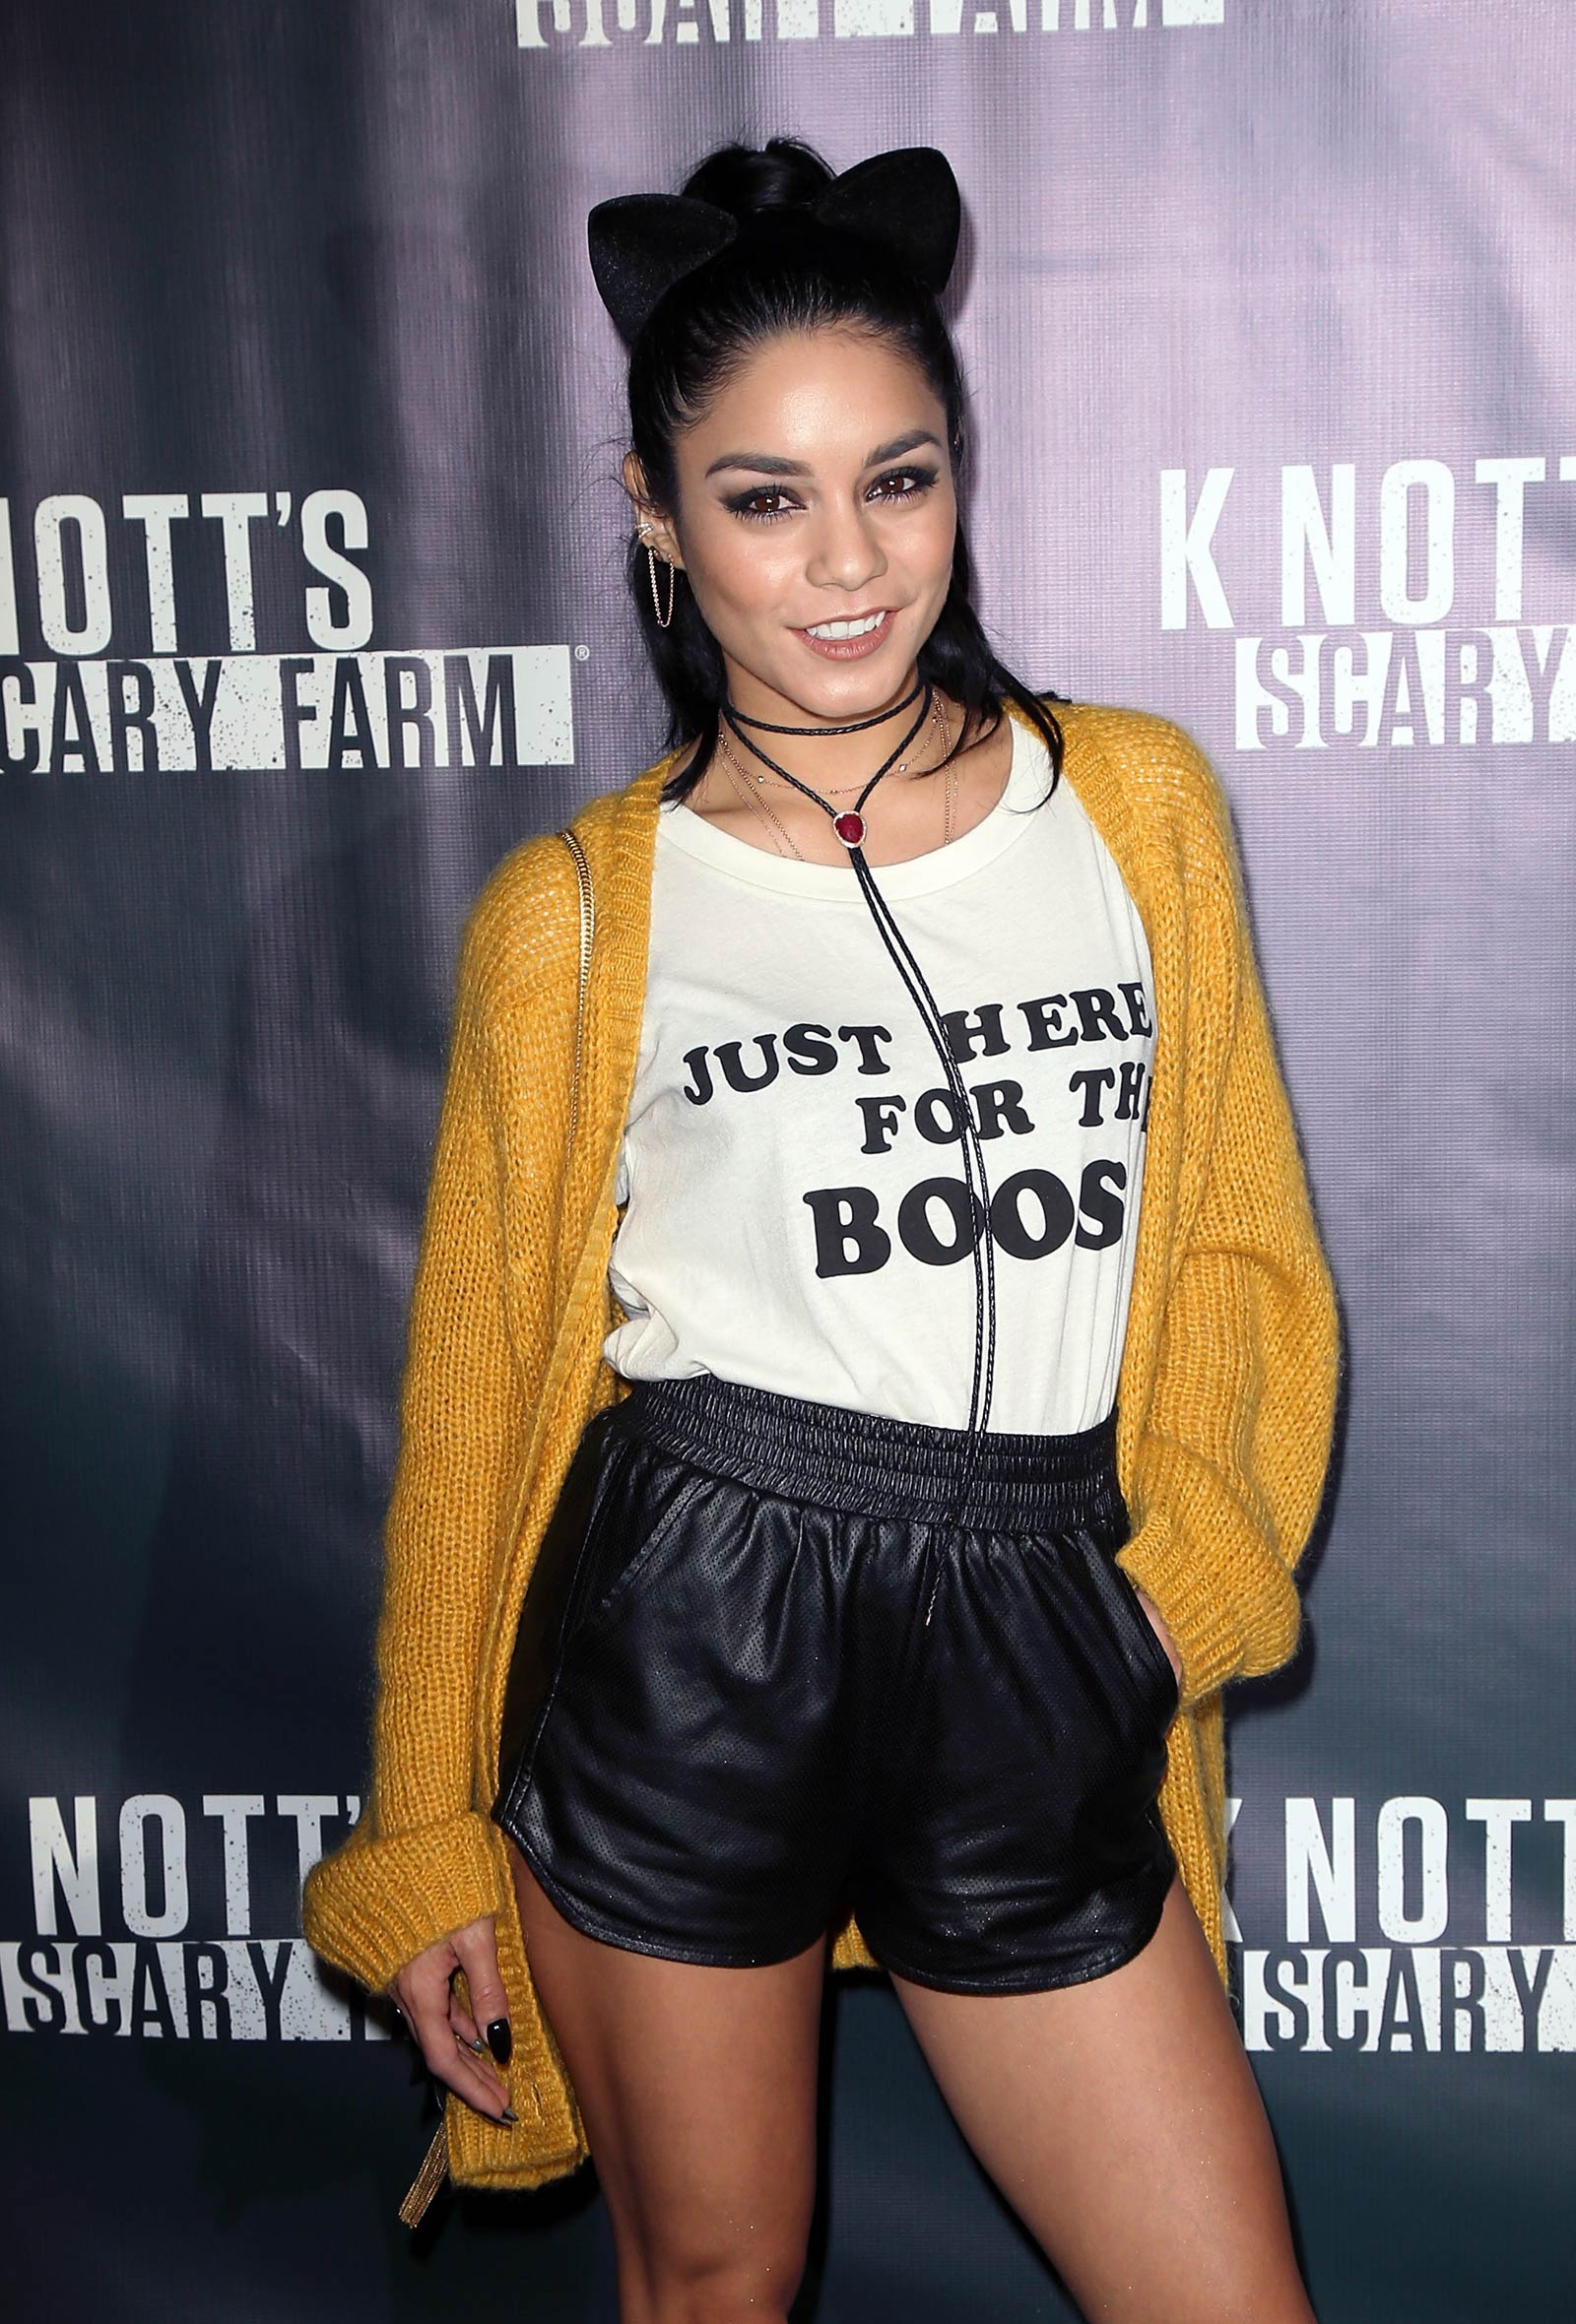 Vanessa Hudgens attends Knott’s Scary Farm Black Carpet event